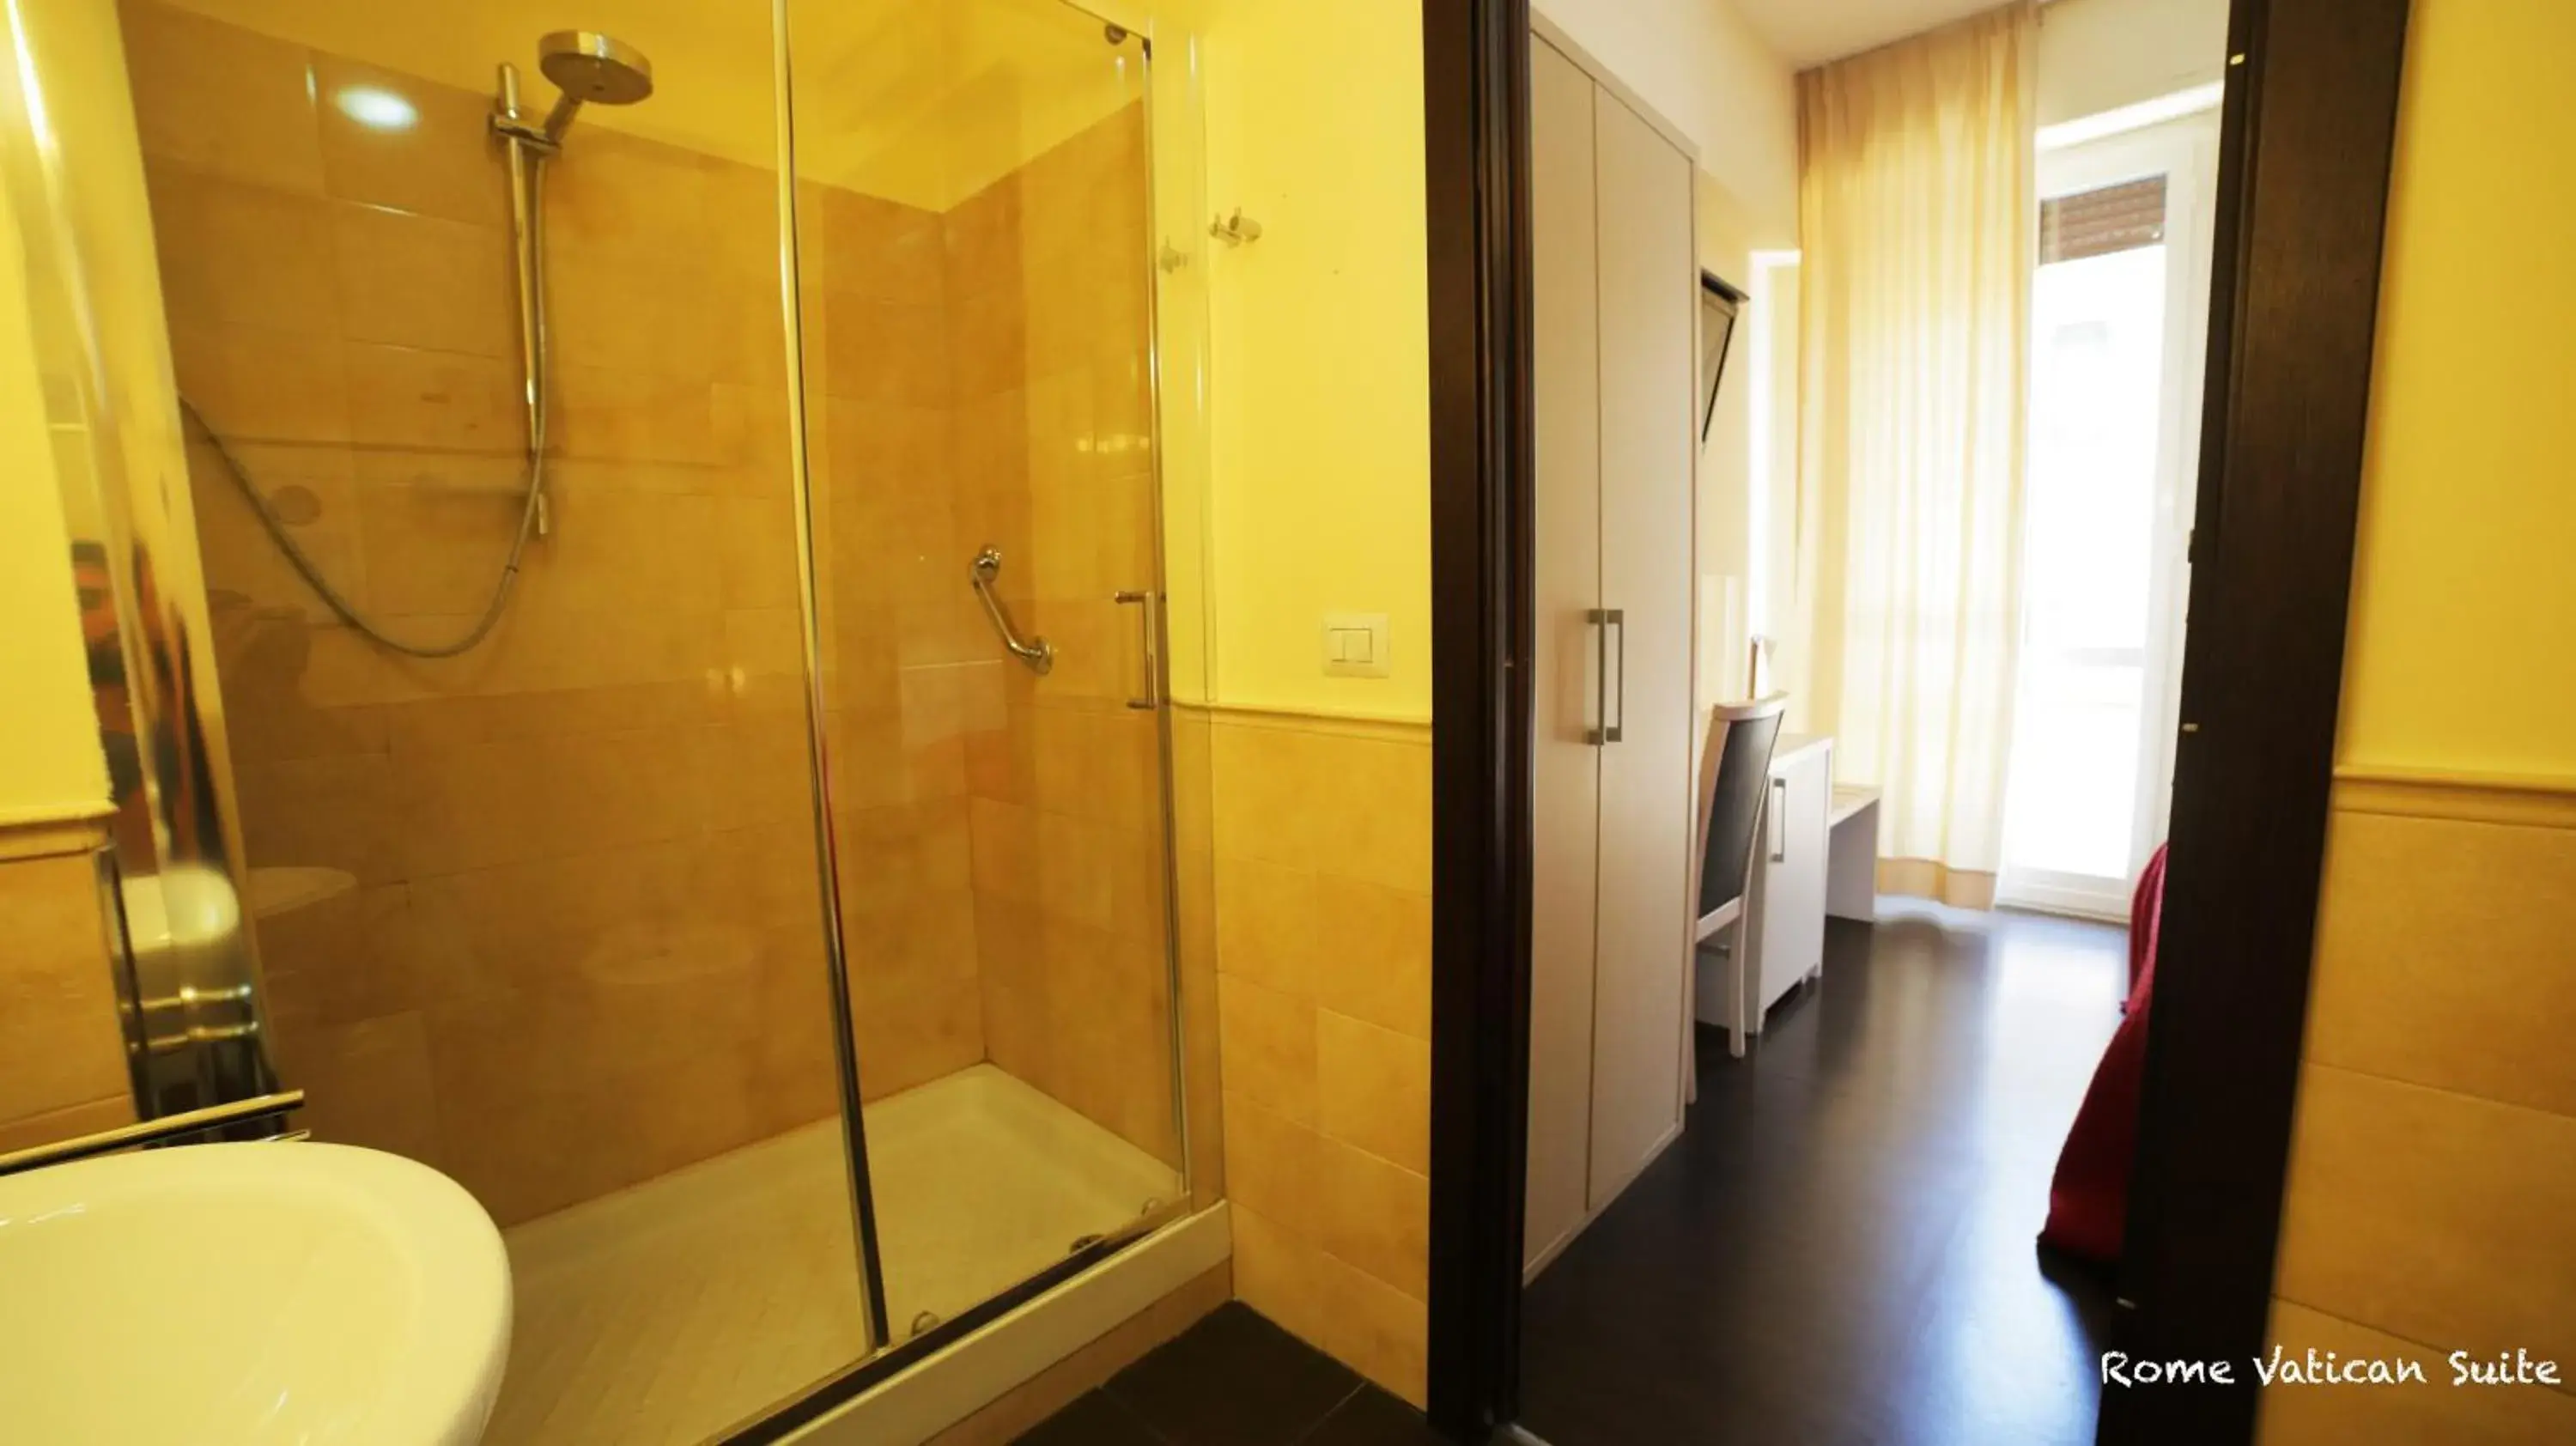 Shower, Bathroom in Rome Vatican Suite